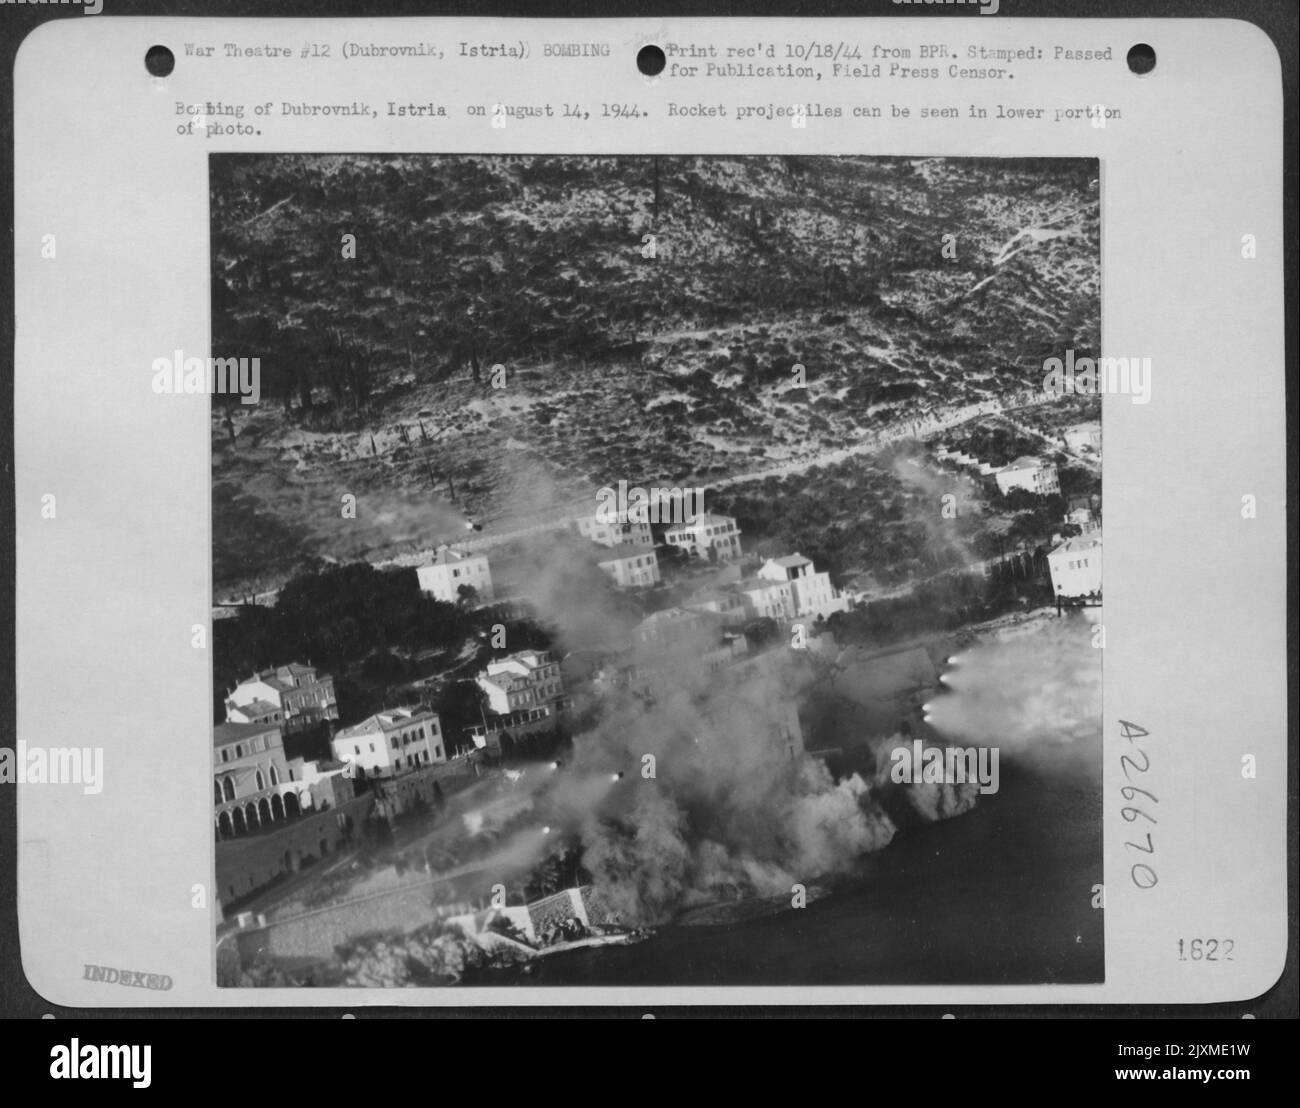 Bombardement de Dubrovnik, Istrie sur 14 août 1944. Les projectiles de fusée peuvent être vus dans la partie inférieure de la photo. Banque D'Images